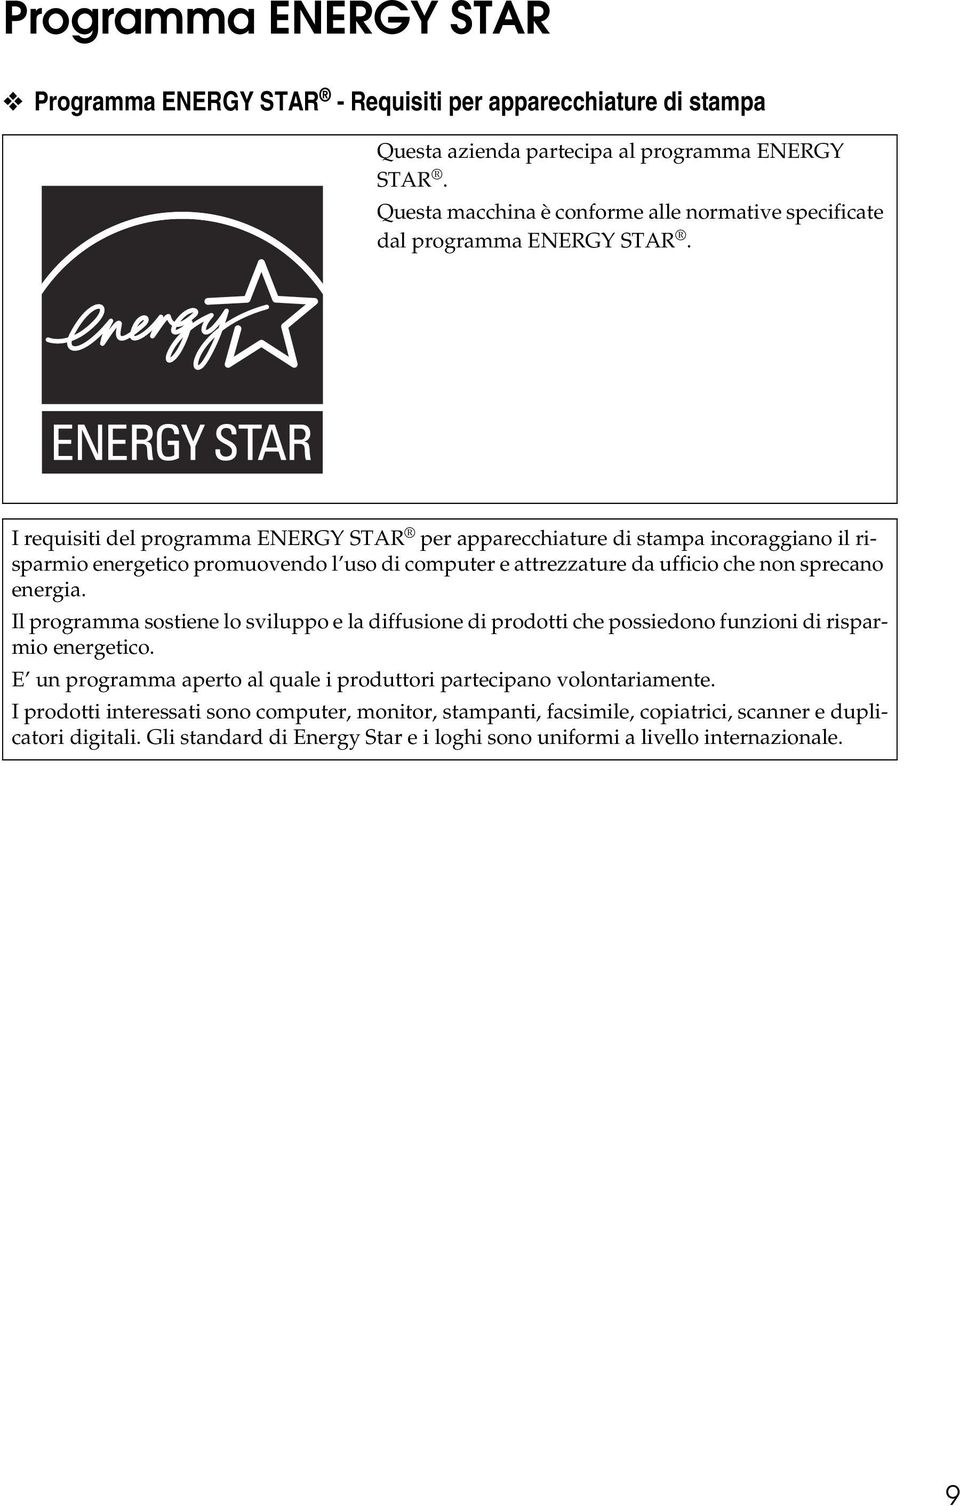 I requisiti del programma ENERGY STAR per apparecchiature di stampa incoraggiano il risparmio energetico promuovendo l uso di computer e attrezzature da ufficio che non sprecano energia.